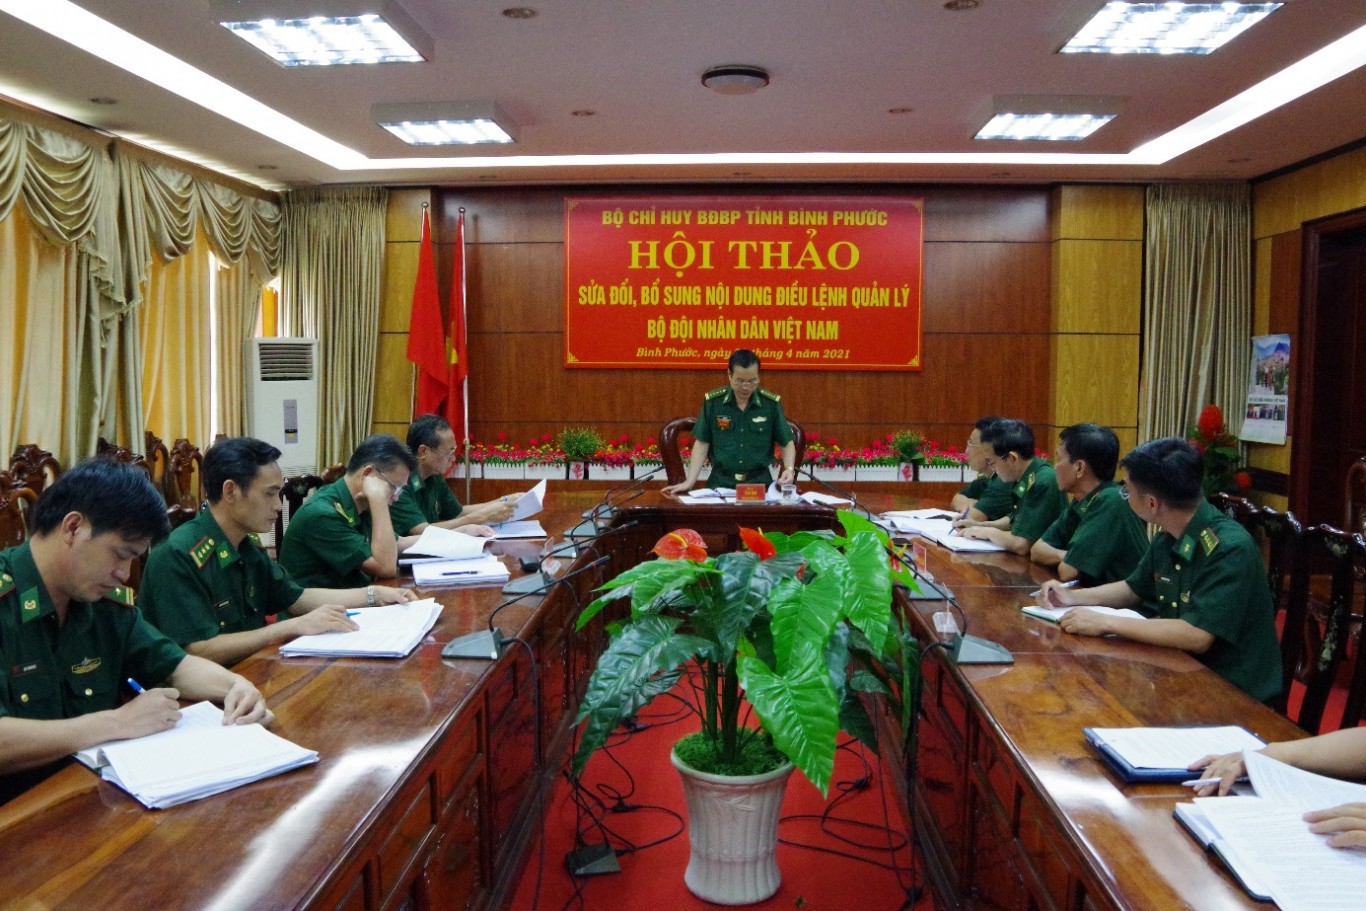 Đại tá Lê Đa Tịnh, Phó Chỉ huy trưởng - Tham mưu trưởng BĐBP Bình Phước phát biểu kết luận